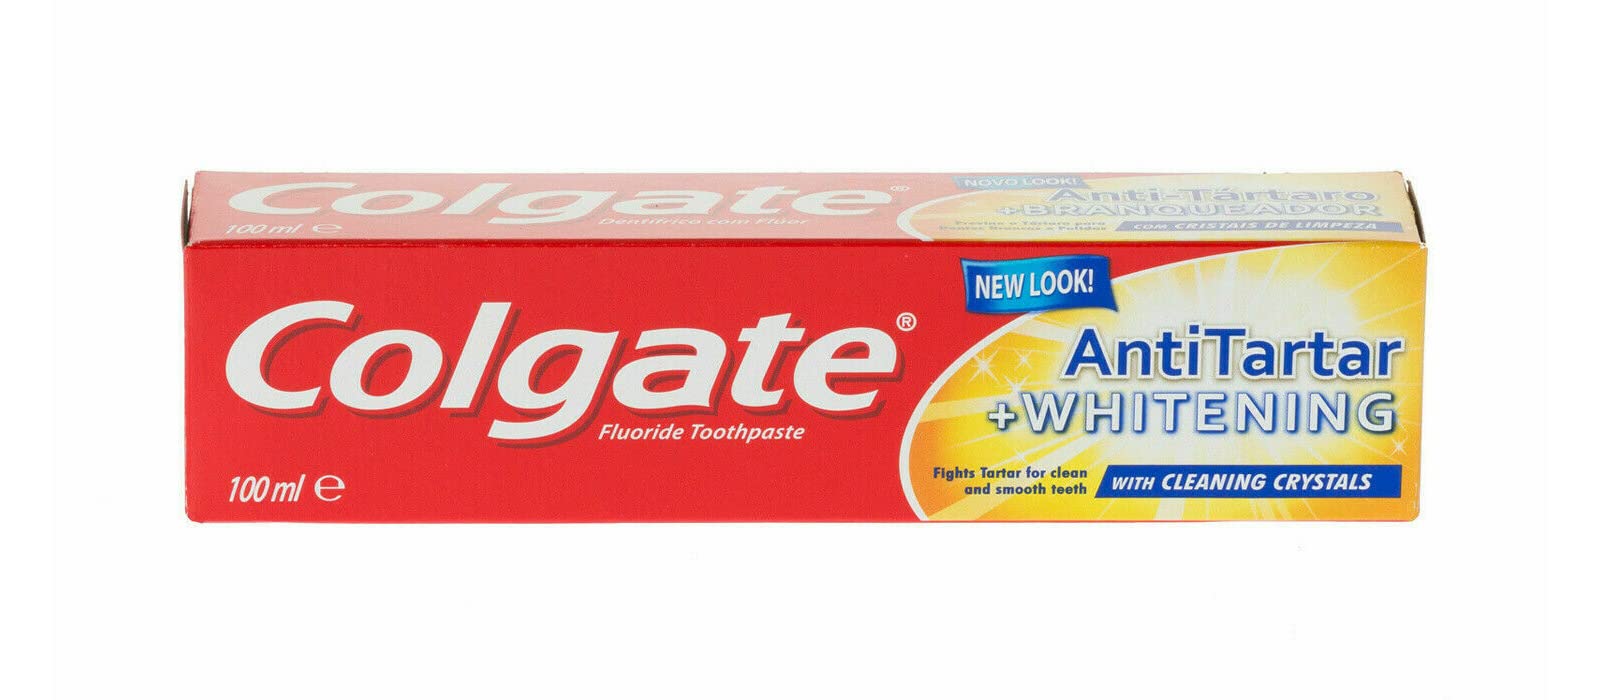 Colgate Toothpaste Anti Tartar Plus Whitening 100ml X 1 - MazenOnline